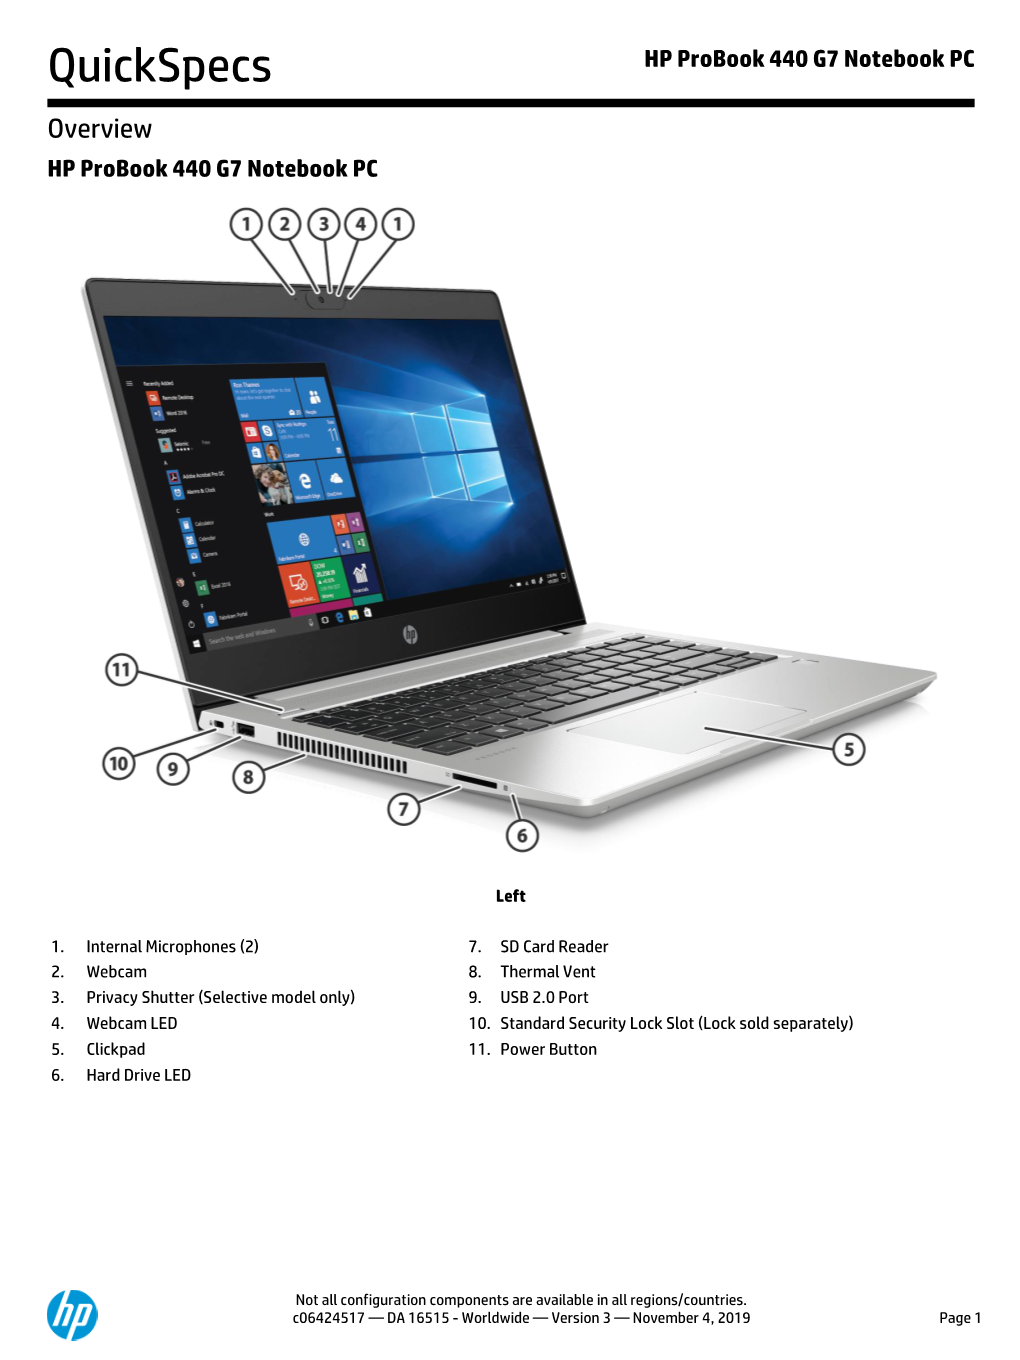 HP Probook 440 G7 Notebook PC Quickspecs